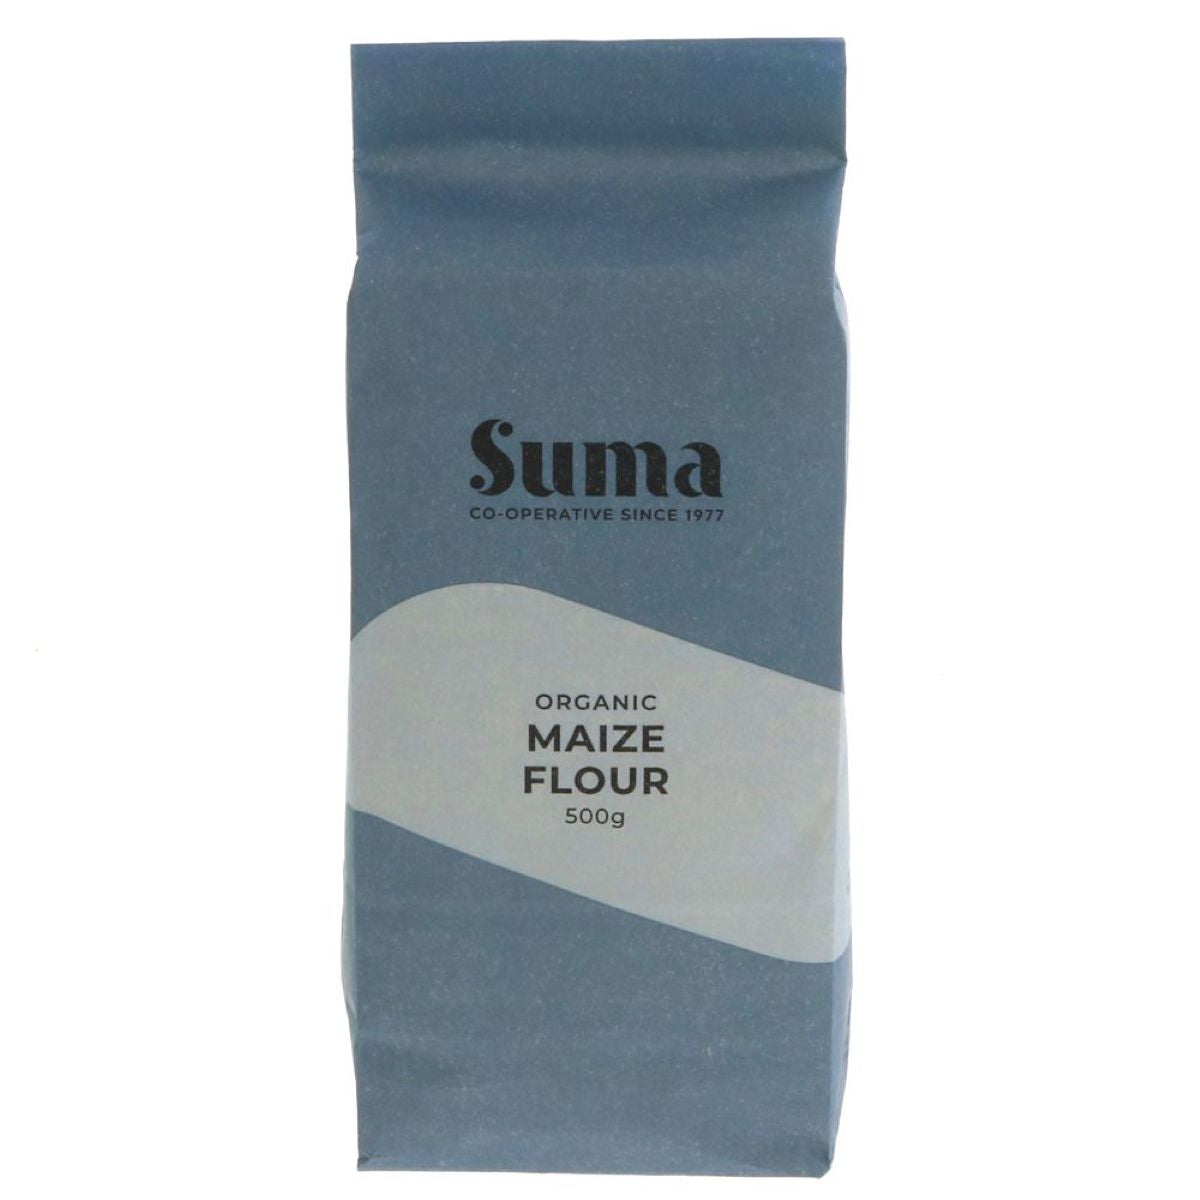 Suma Organic Maize Flour 500g